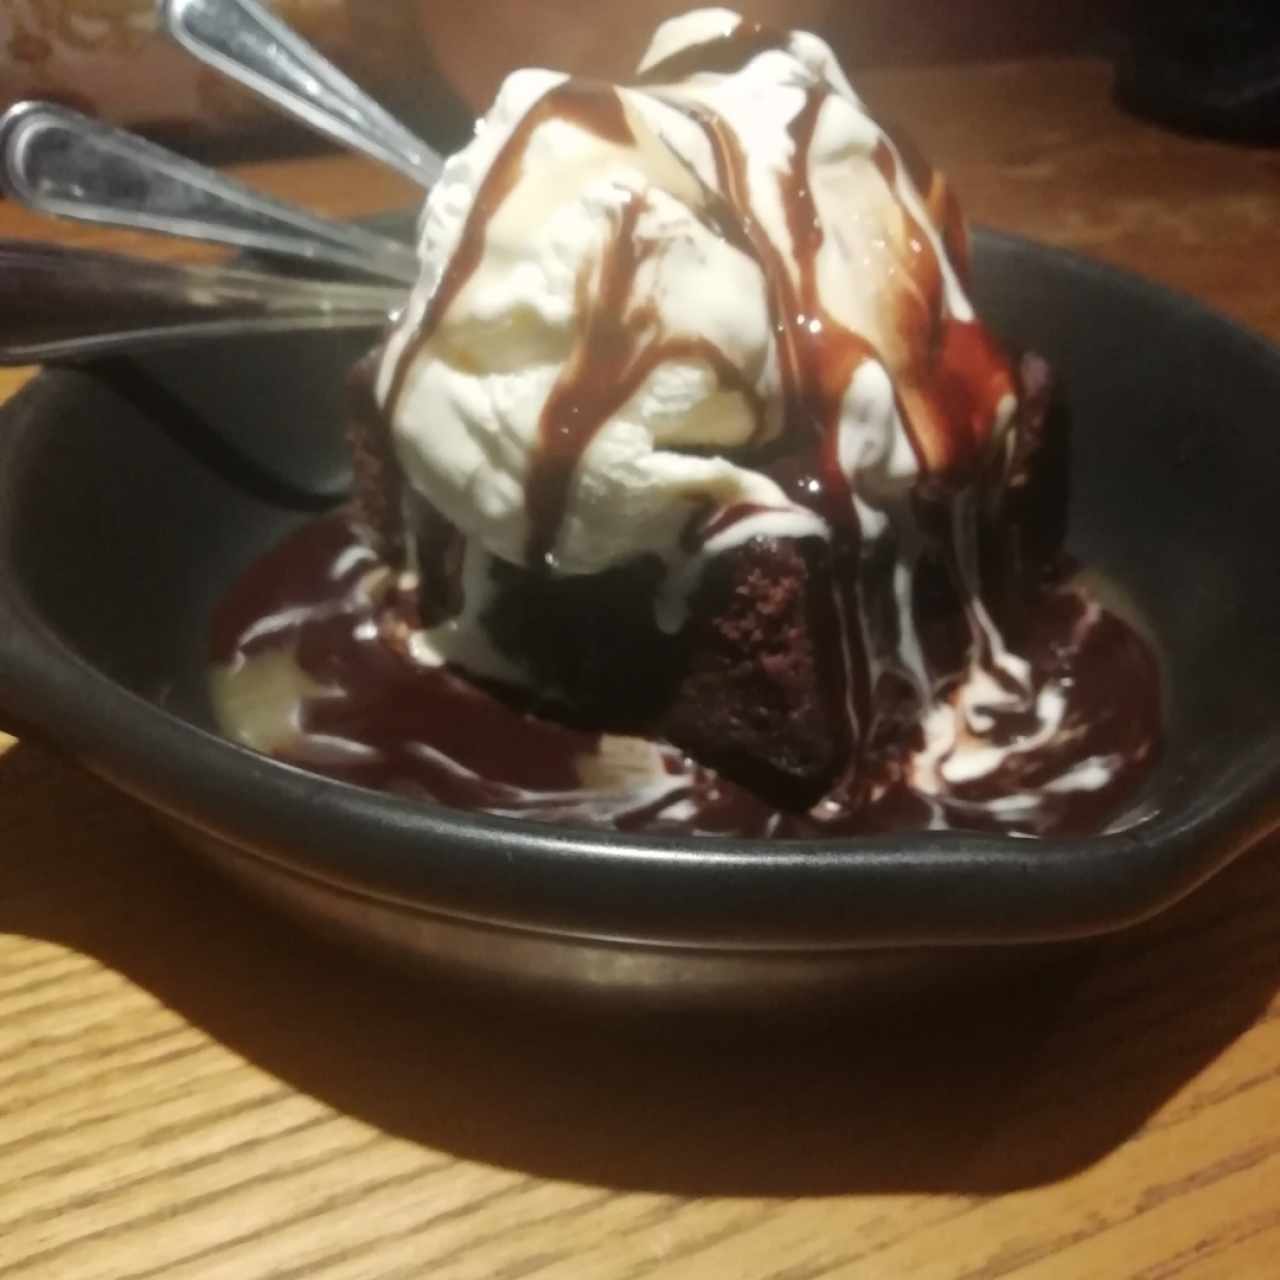 Brownie con helado 